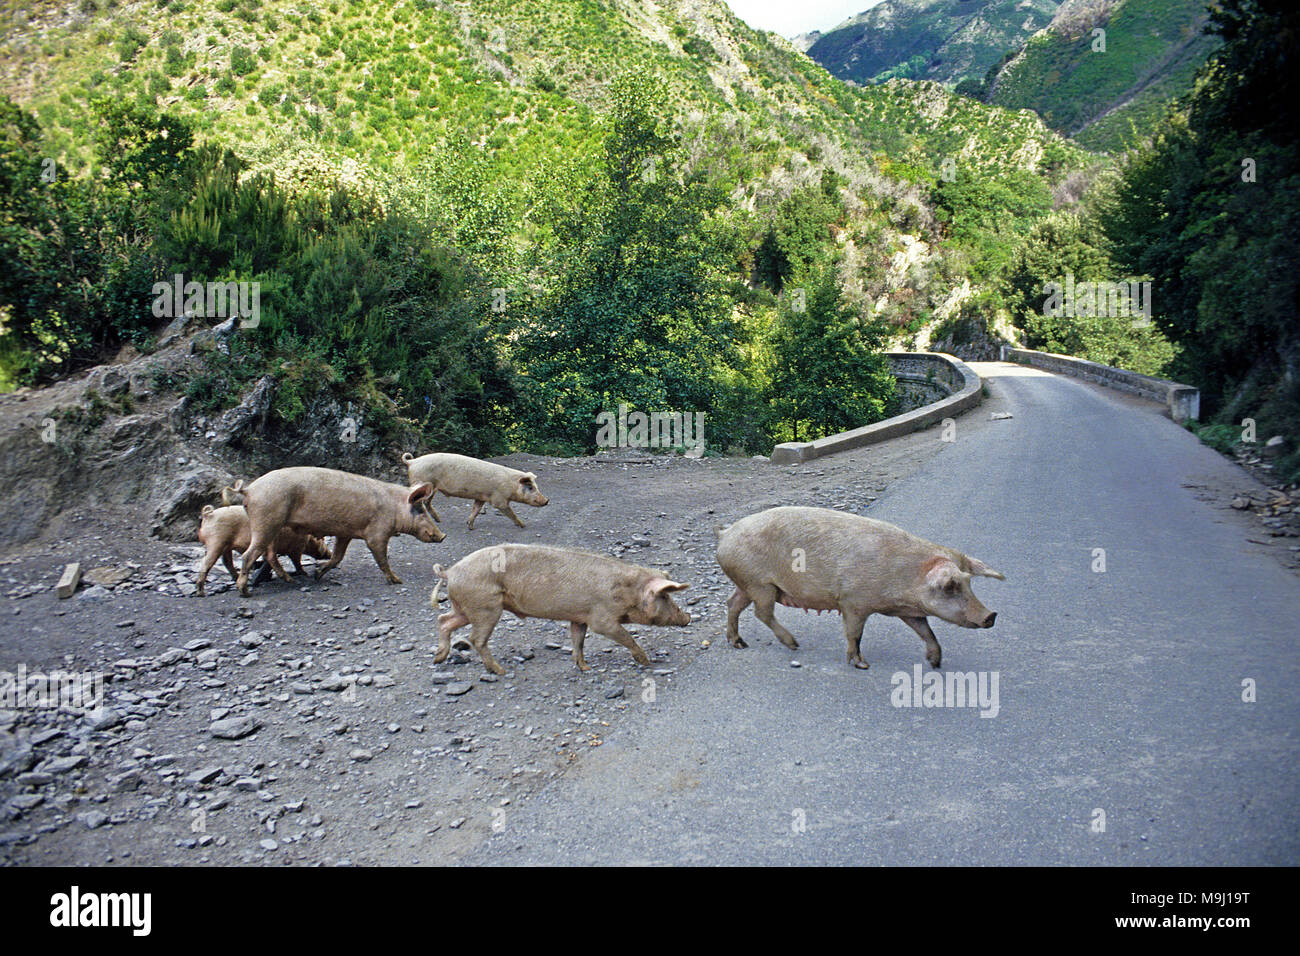 Les porcs vivant en liberté sur la route, se nourrit de châtaignes et de glands, viandes savoureuses, Corse, France, Europe, Méditerranée Banque D'Images